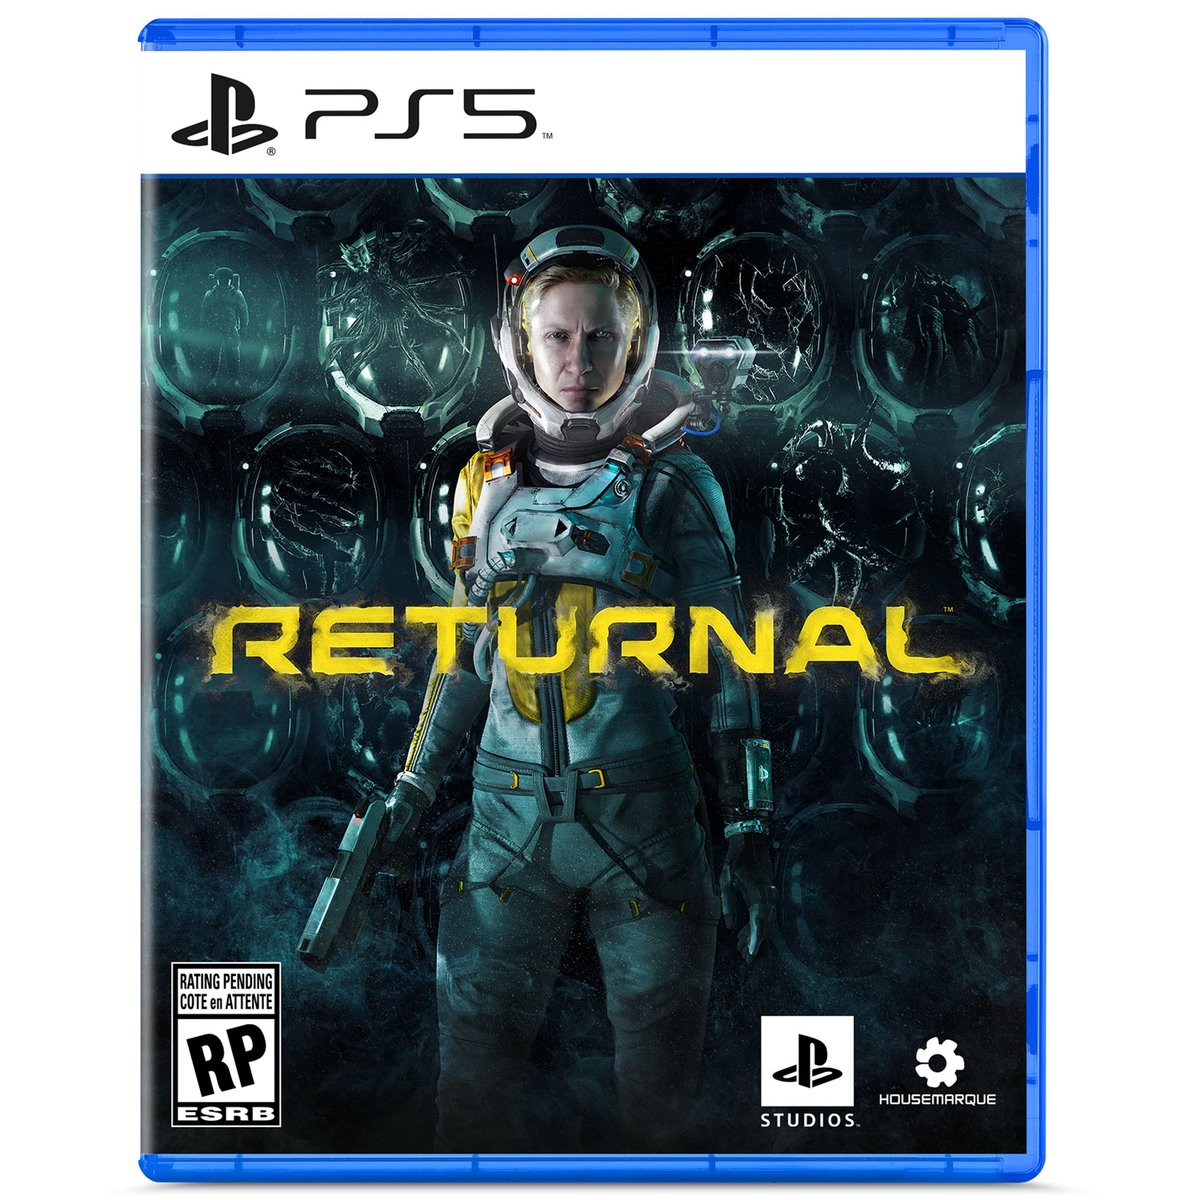 В ритейловом магазине появилась дата релиза эксклюзива PS5 Returnal - 19 марта